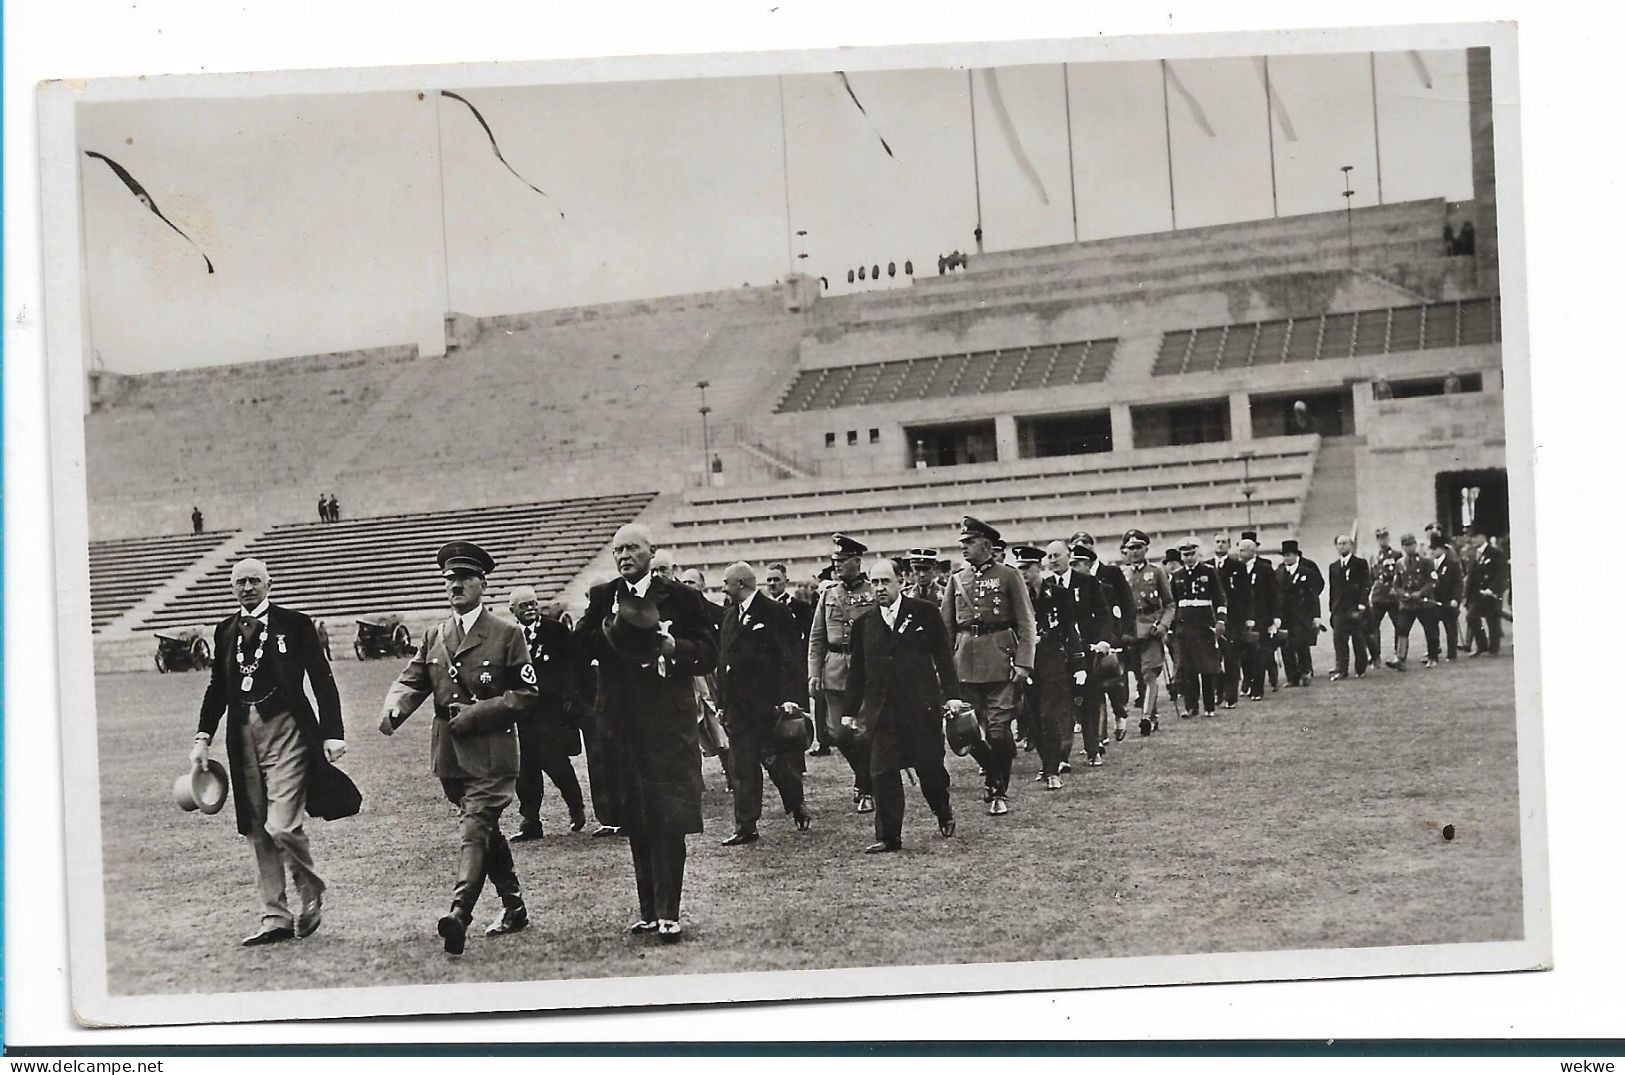 OY205 / OLYMPIADE 1936 - Amtliche Postkarte Zur Eröffnung Der Olympischen Spiele, 6.8.36 - Sommer 1936: Berlin